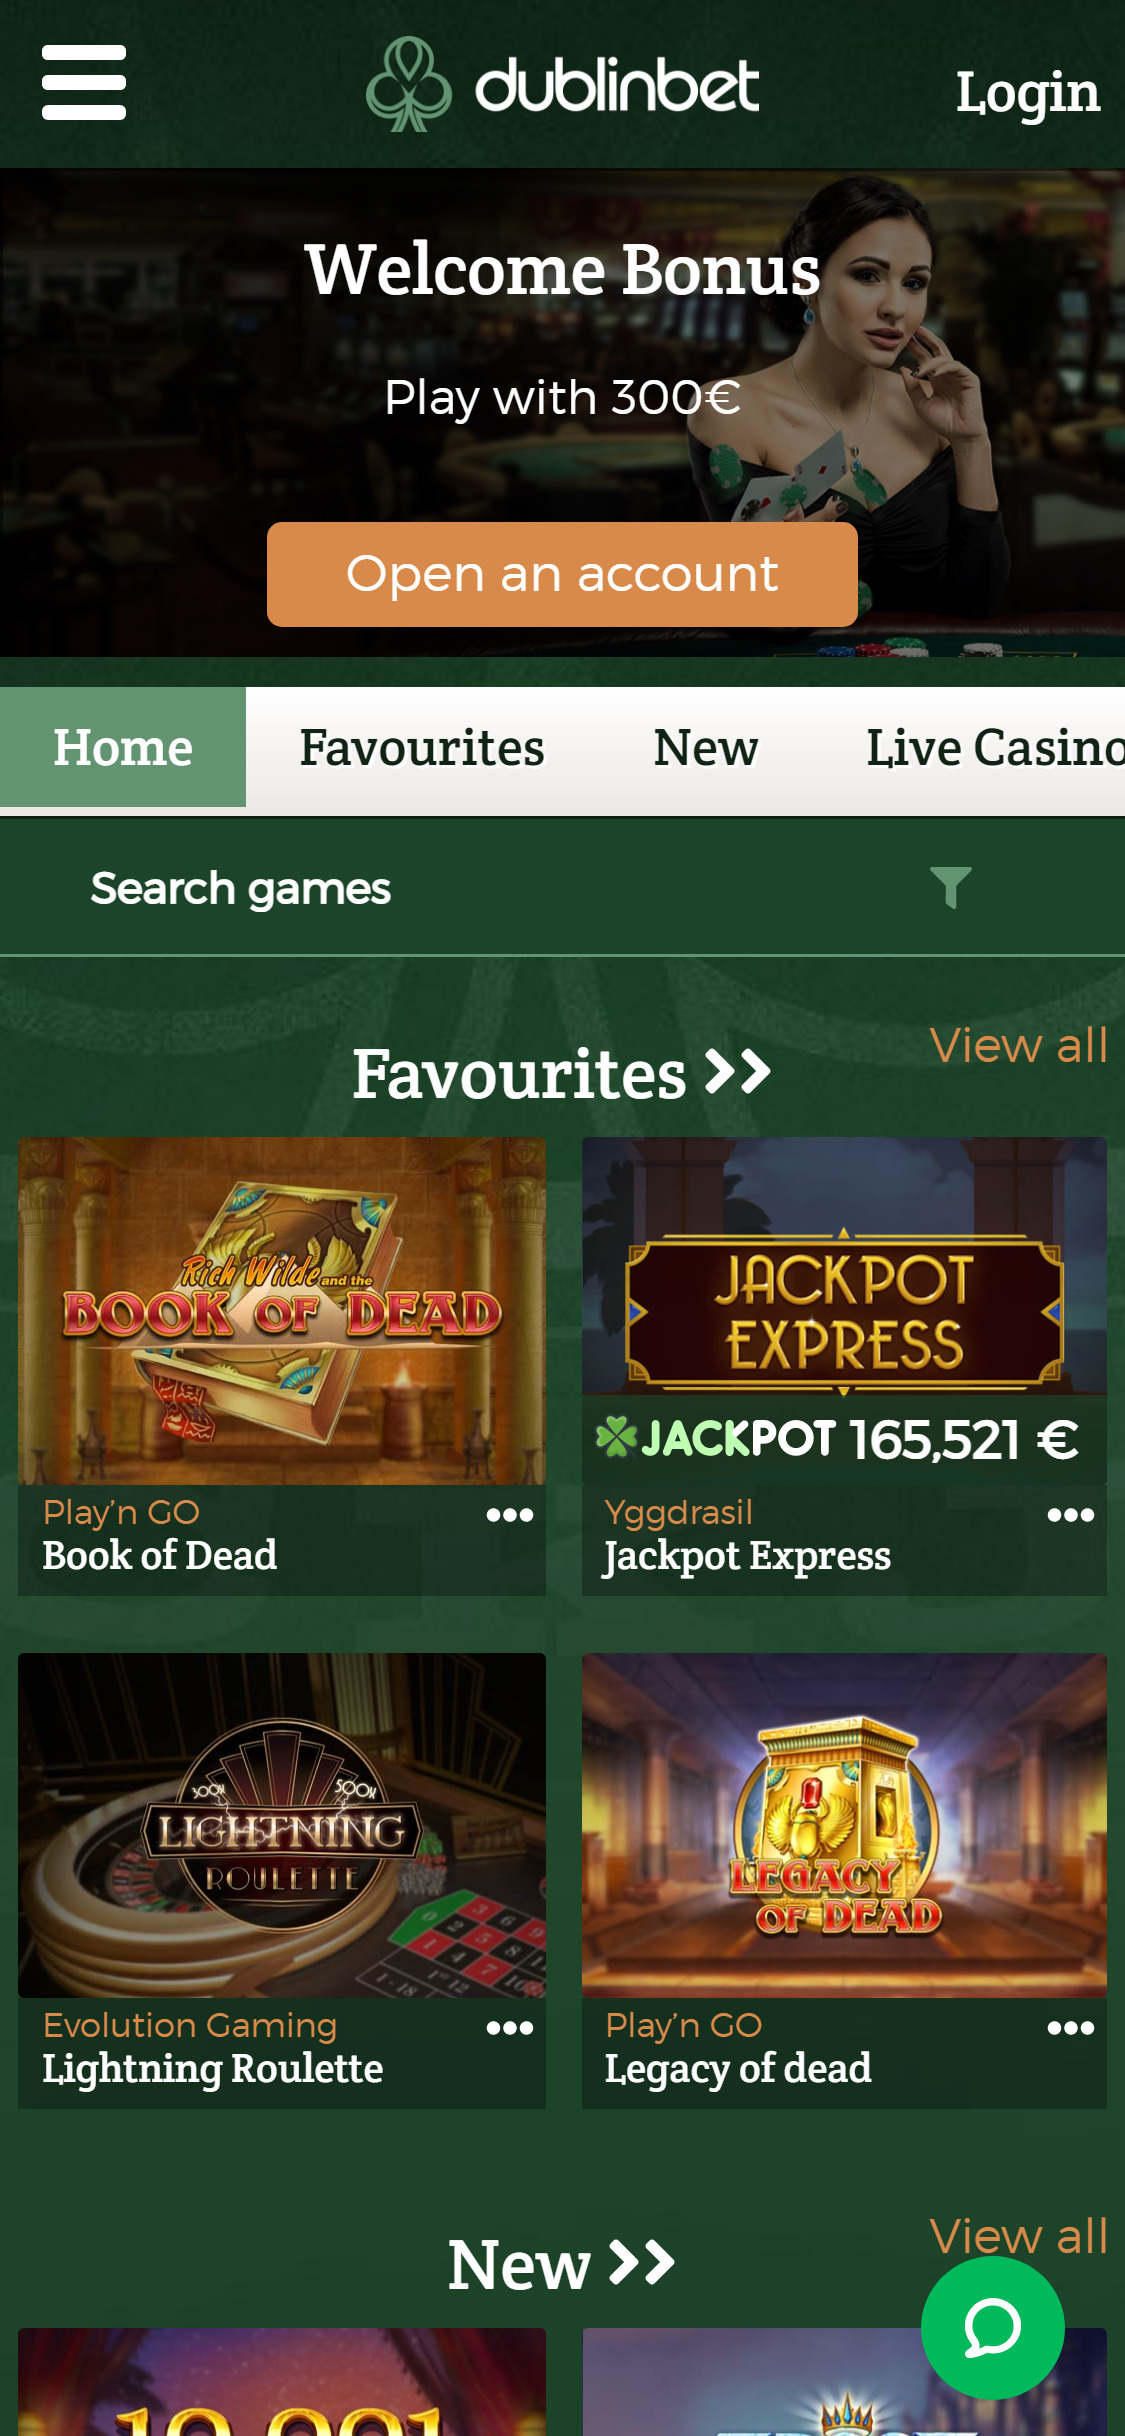 Dublinbet Casino Mobile Login Review